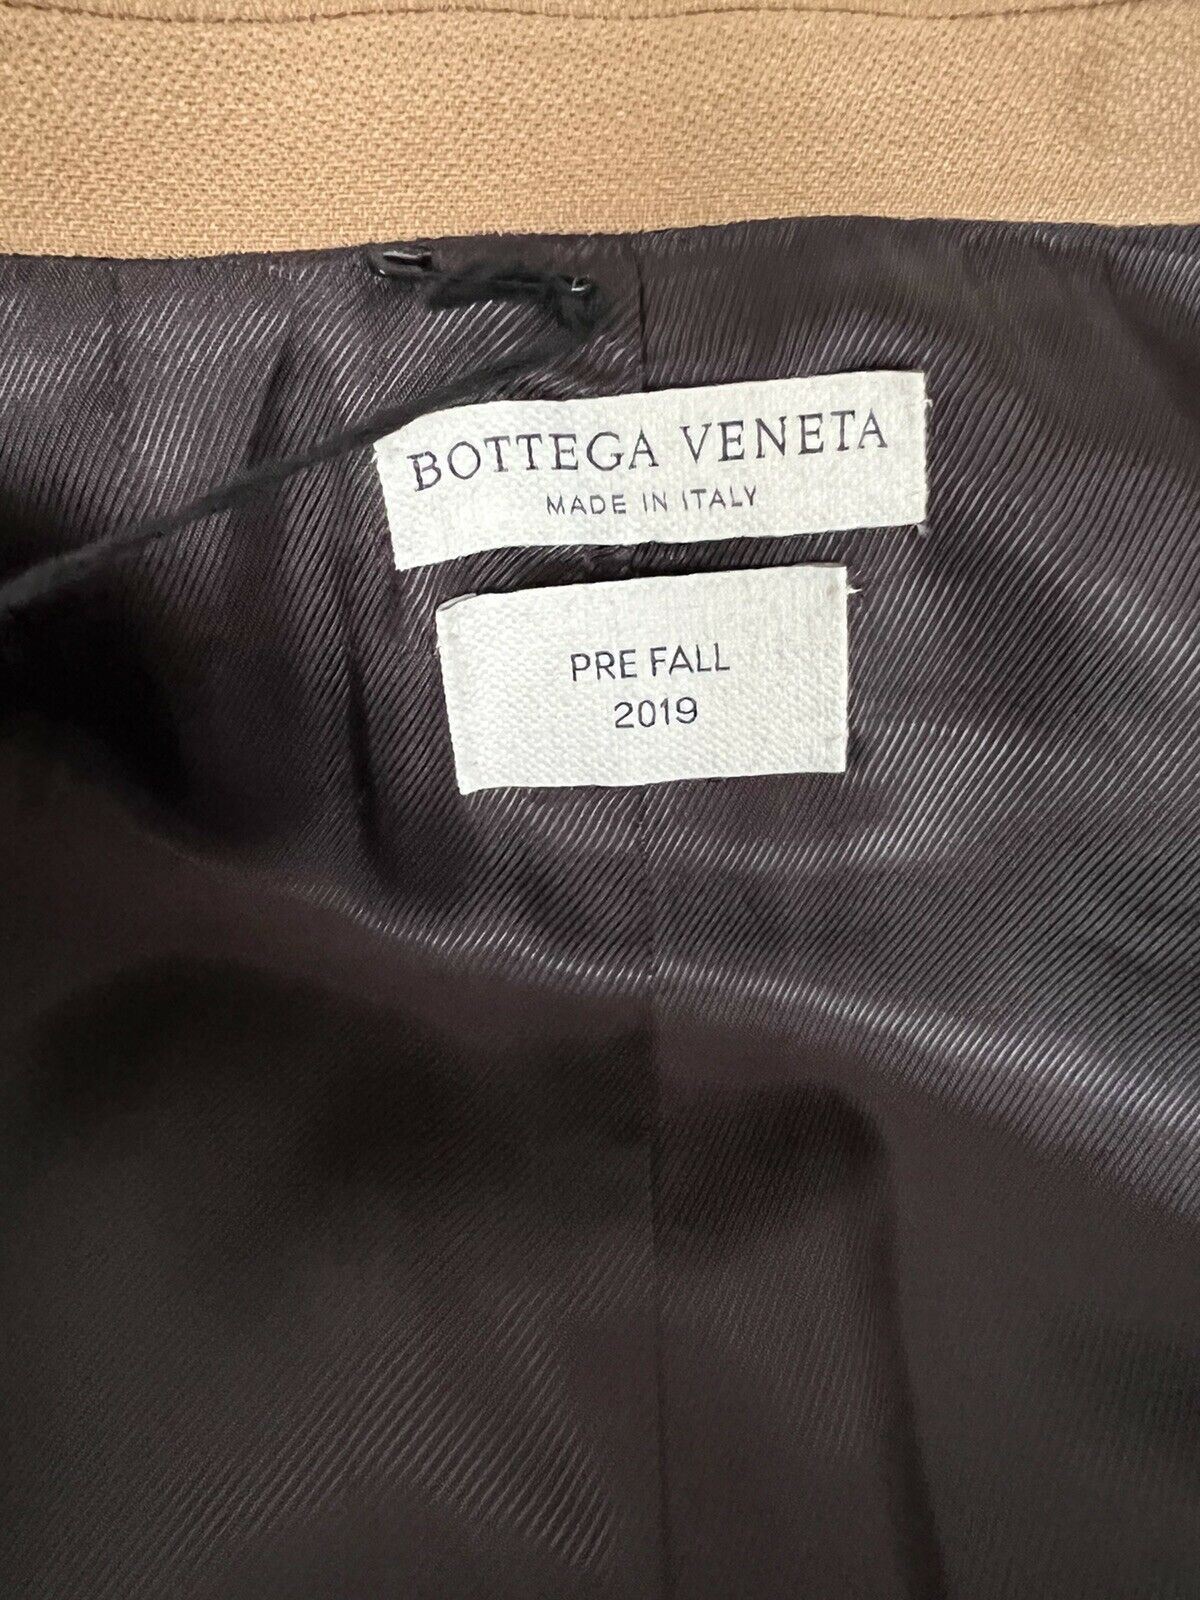 Neu mit Etikett: 2.880 $ Bottega Veneta Damen-Einreiherjacke in Kamel/Karamell, 38 US